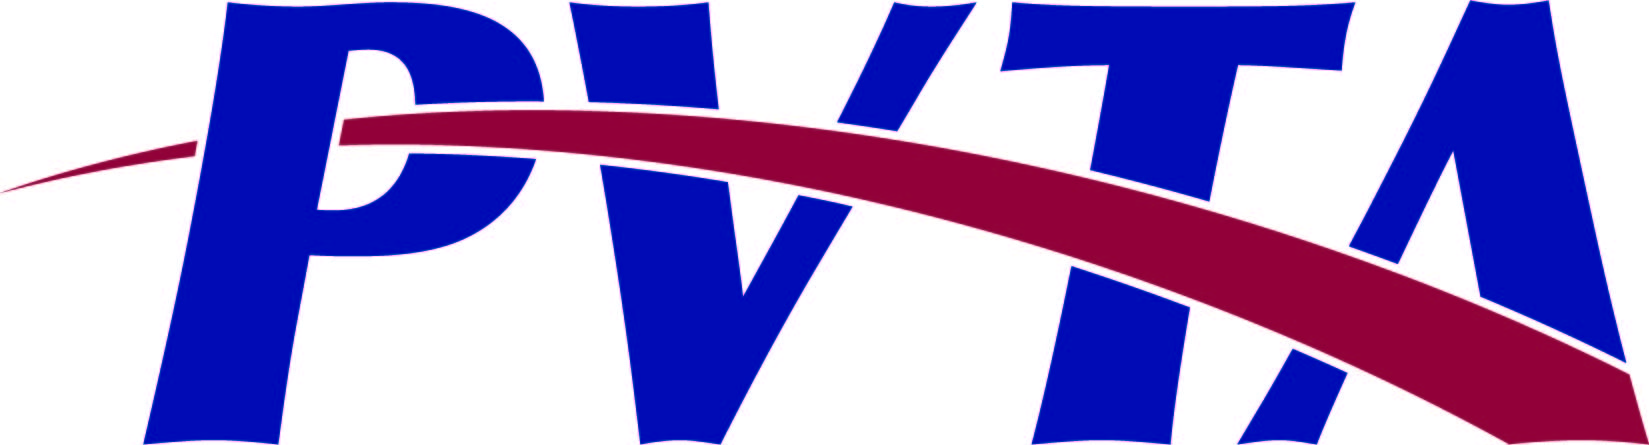 Grantee logo